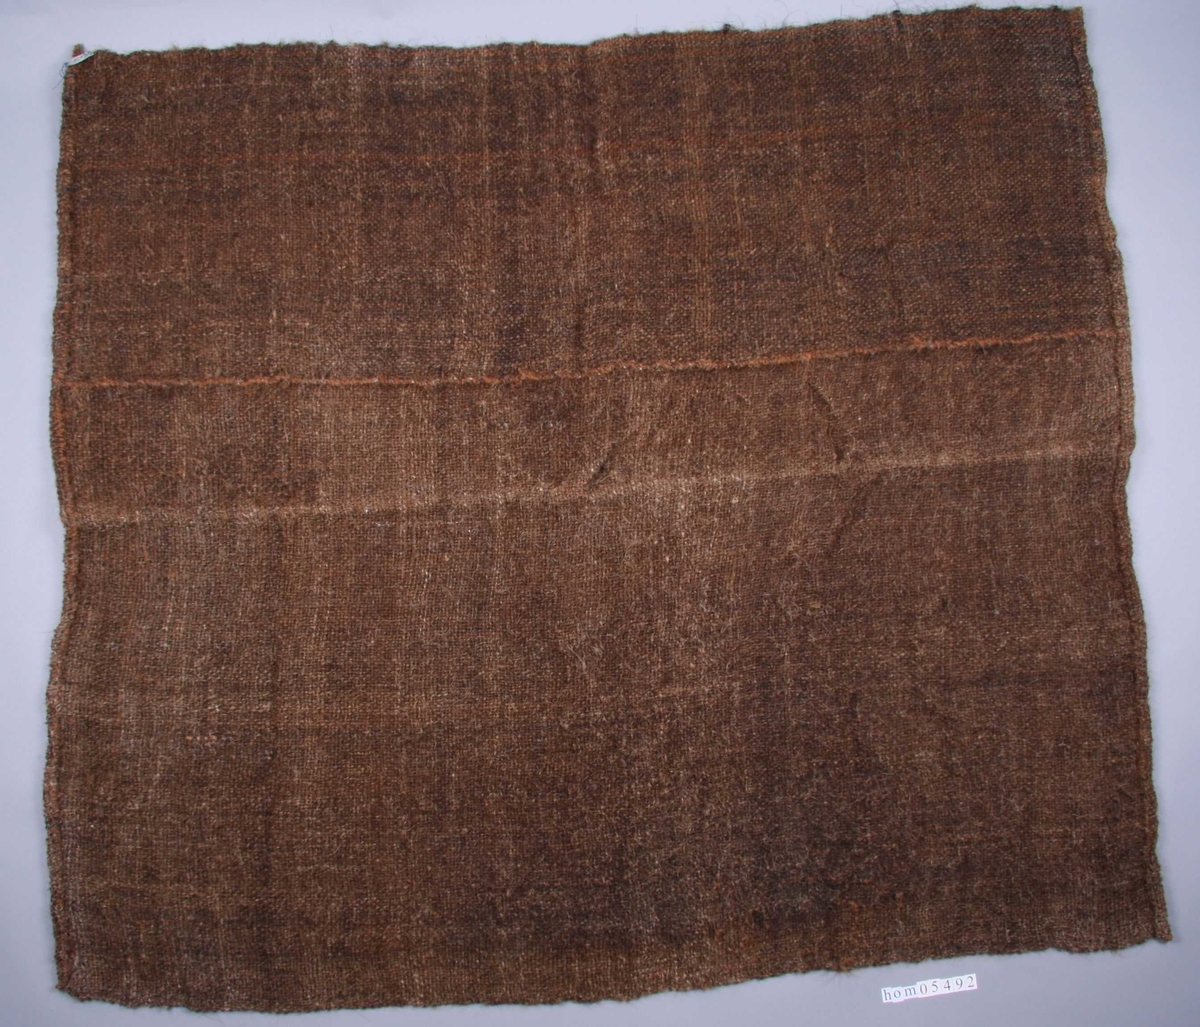 Rektangulær silduk laga av hår frå kuhalar, spunne og tvinna til tjukke trådar og vevd til duk. Duken vert brukt til å tørke malt til ølbrygging.